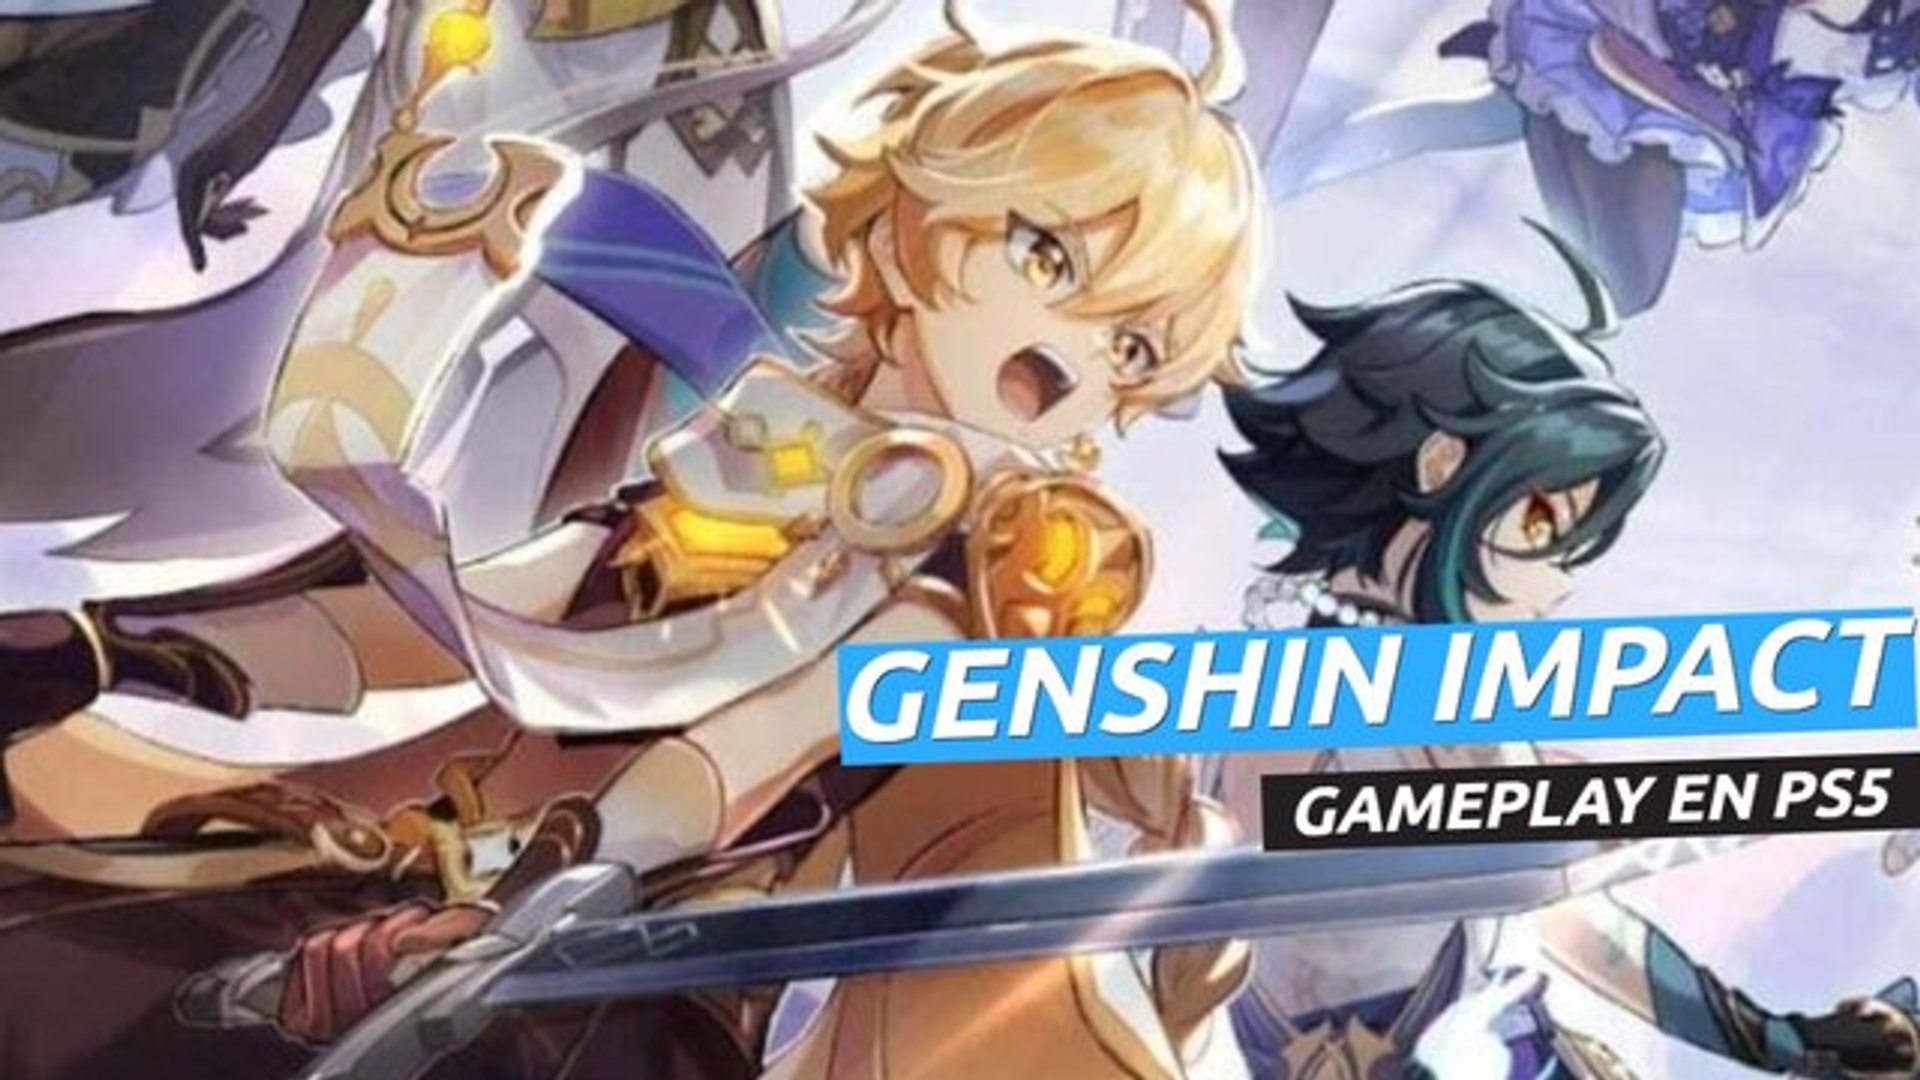 Genshin Impact - Gameplay en PS5